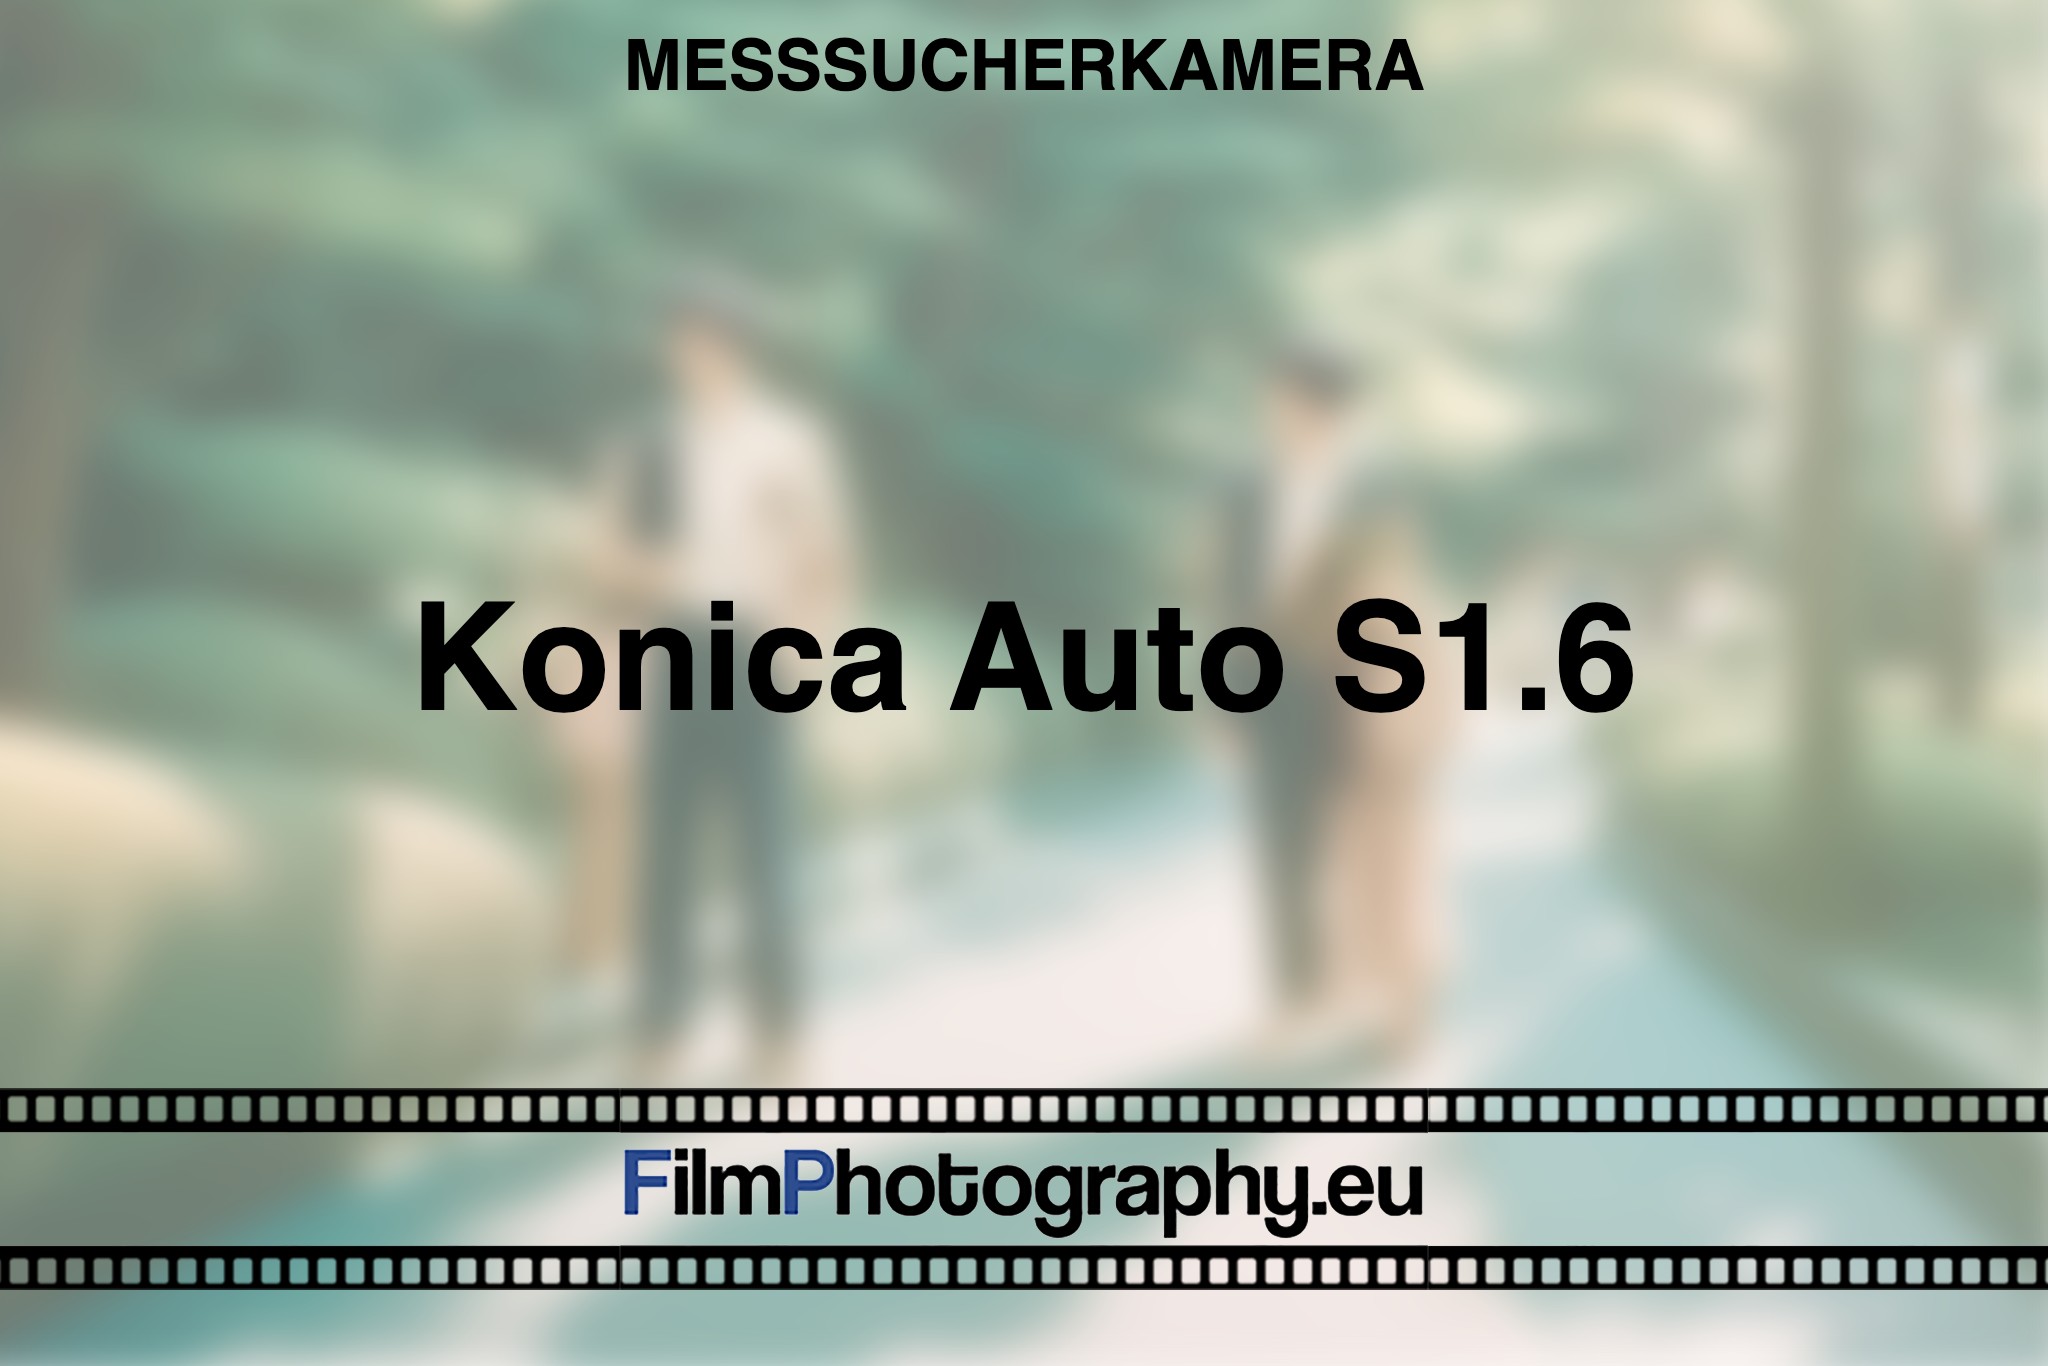 konica-auto-s1-6-messsucherkamera-bnv